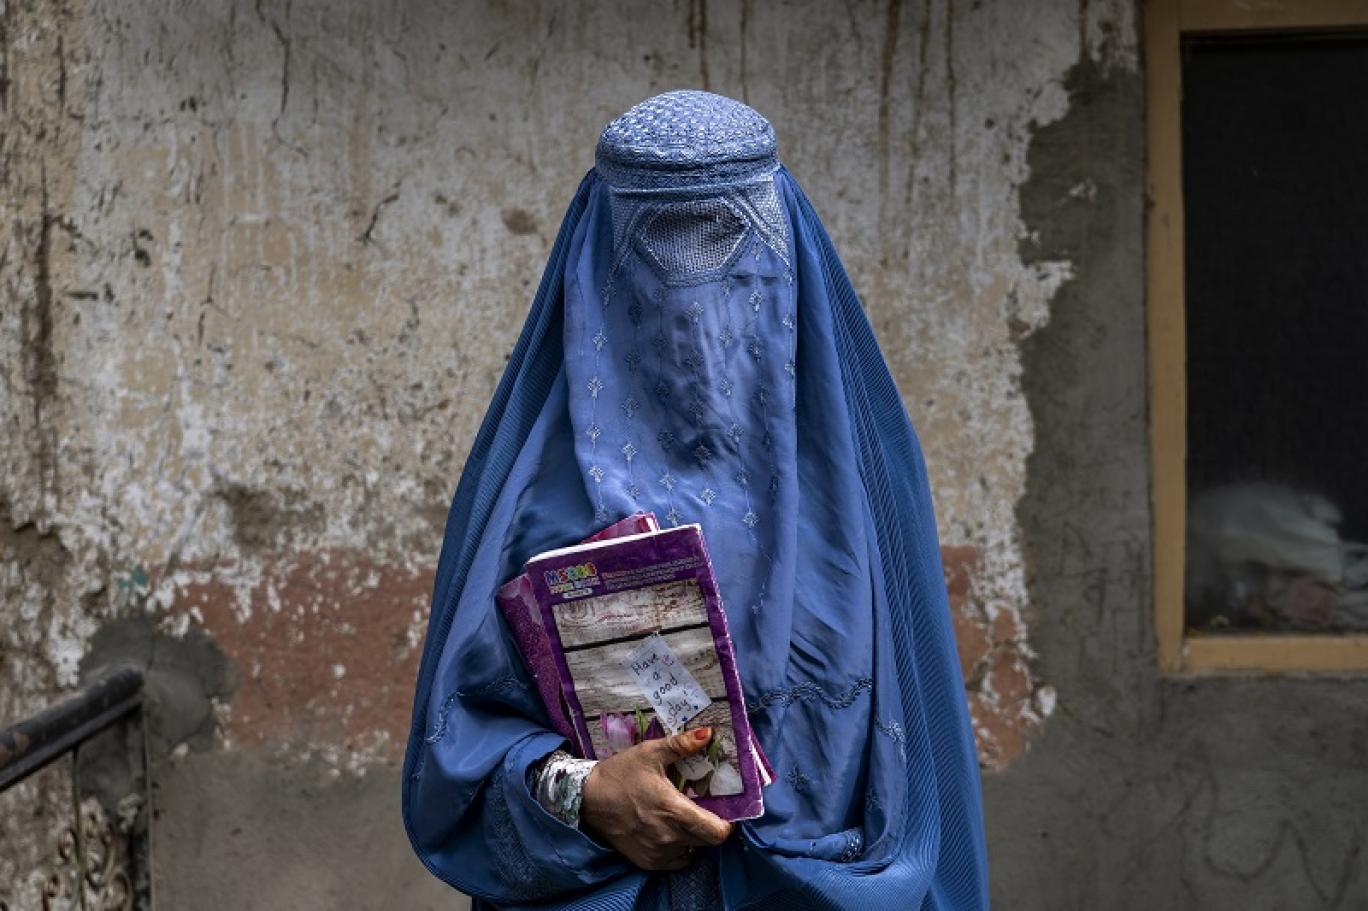 نظام التعليم الطالباني؛ يأس وقلق التلامذة من مستقبل غامض للتعليم في أفغانستان